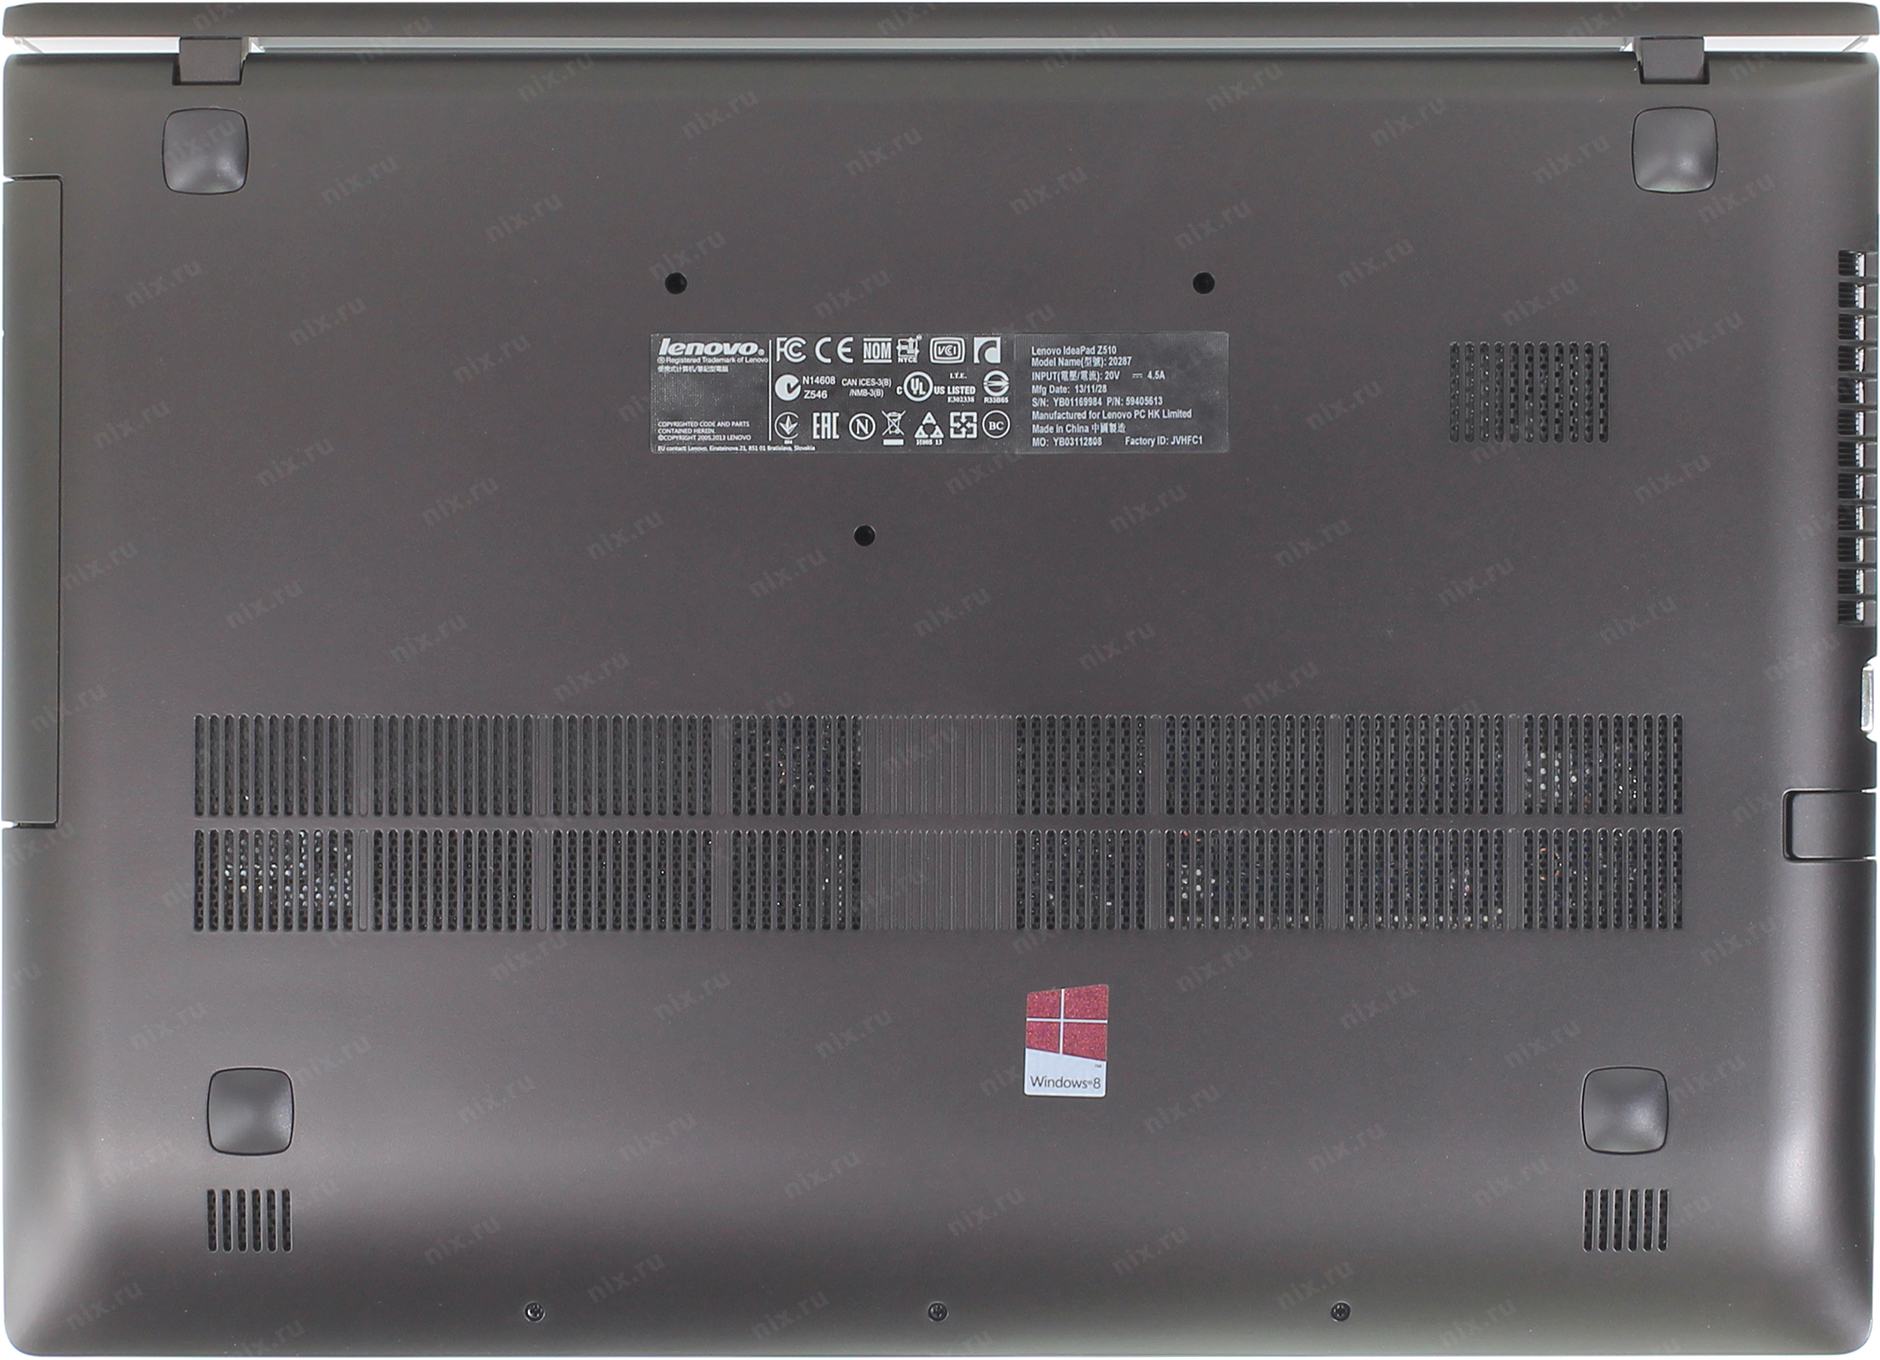 Купить Ноутбук Lenovo Z510a